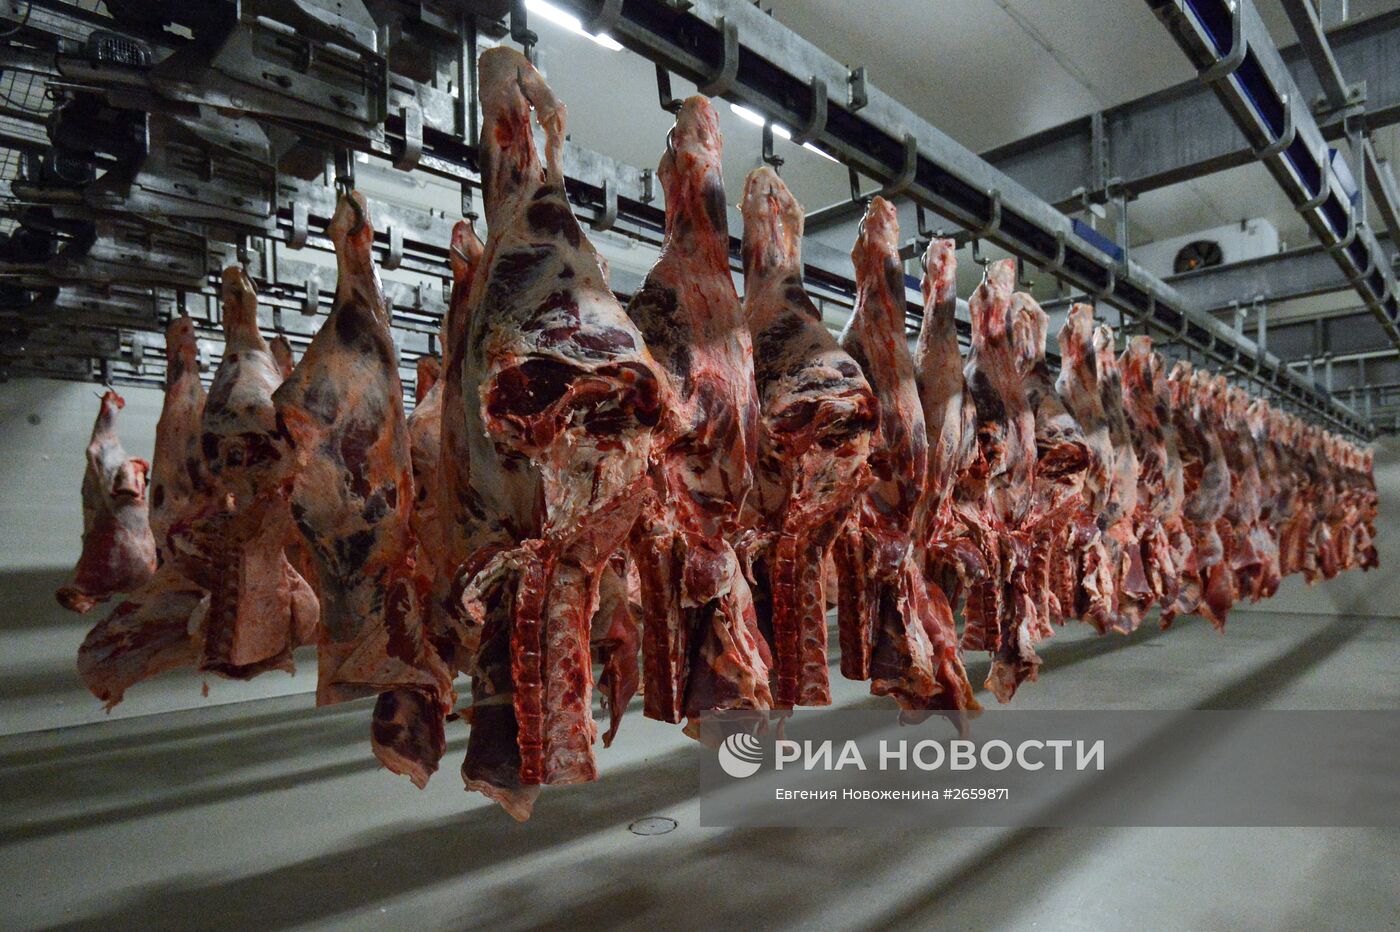 Мясоперерабатывающее предприятие АПХ "Мираторг" в Брянской области